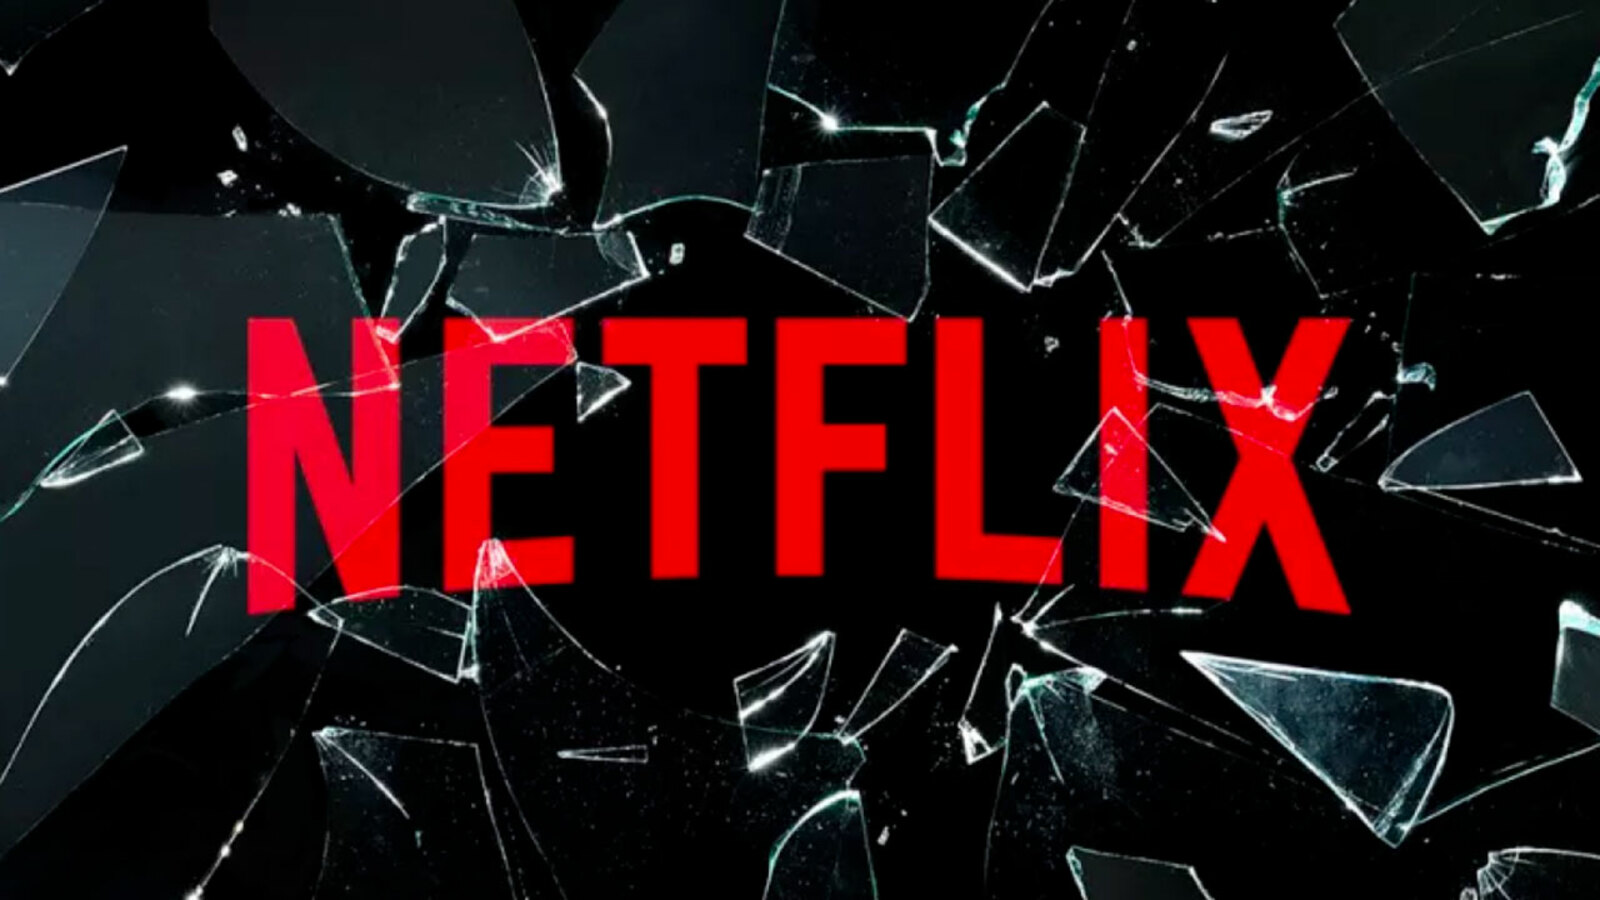 Netflix: Artisti 7607 avvia un’azione legale contro la nota piattaforma di streaming